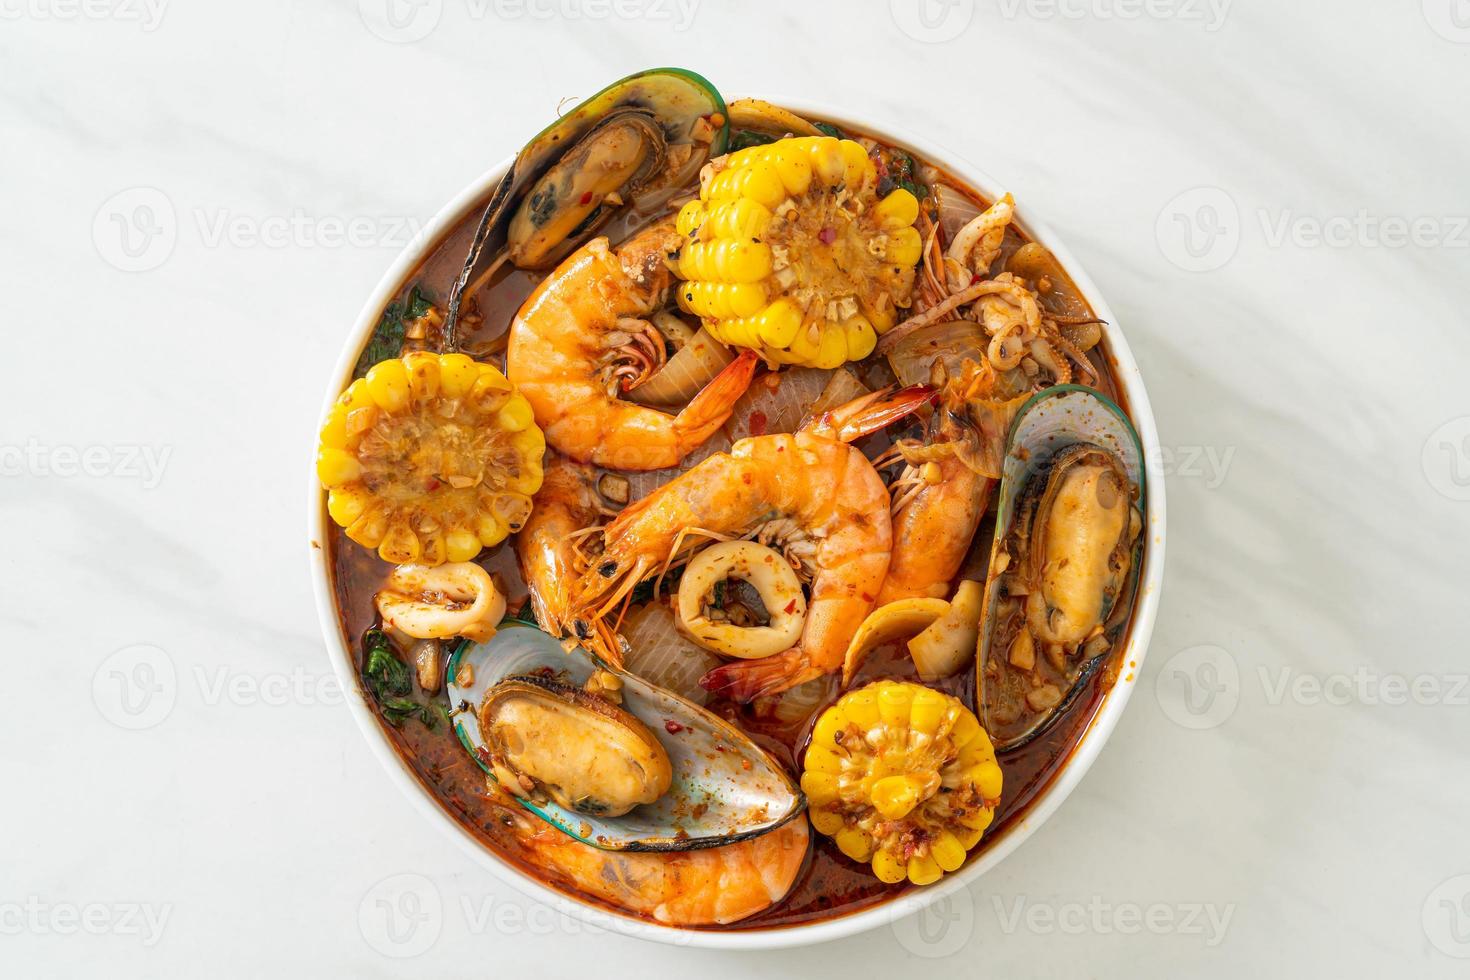 würzige Meeresfrüchte vom Grill - Garnelen, Tintenfisch, Muschel foto